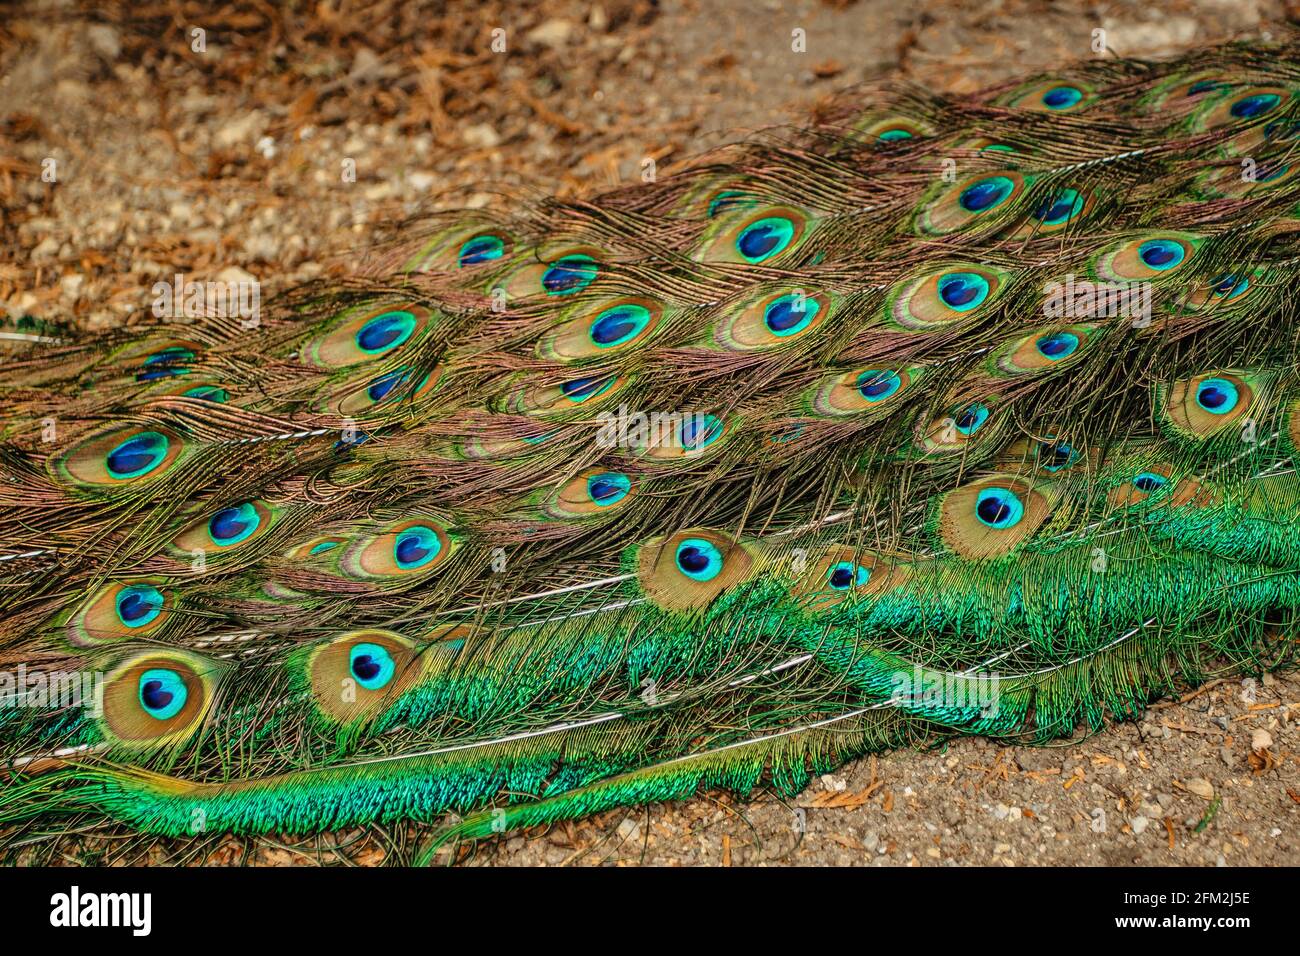 Piacock piume closeup.Blue indiano pavone, pavo cristatus, con colorata iridescente coda e metallo blu verde piume.Ornamental uccello esotico. Foto Stock